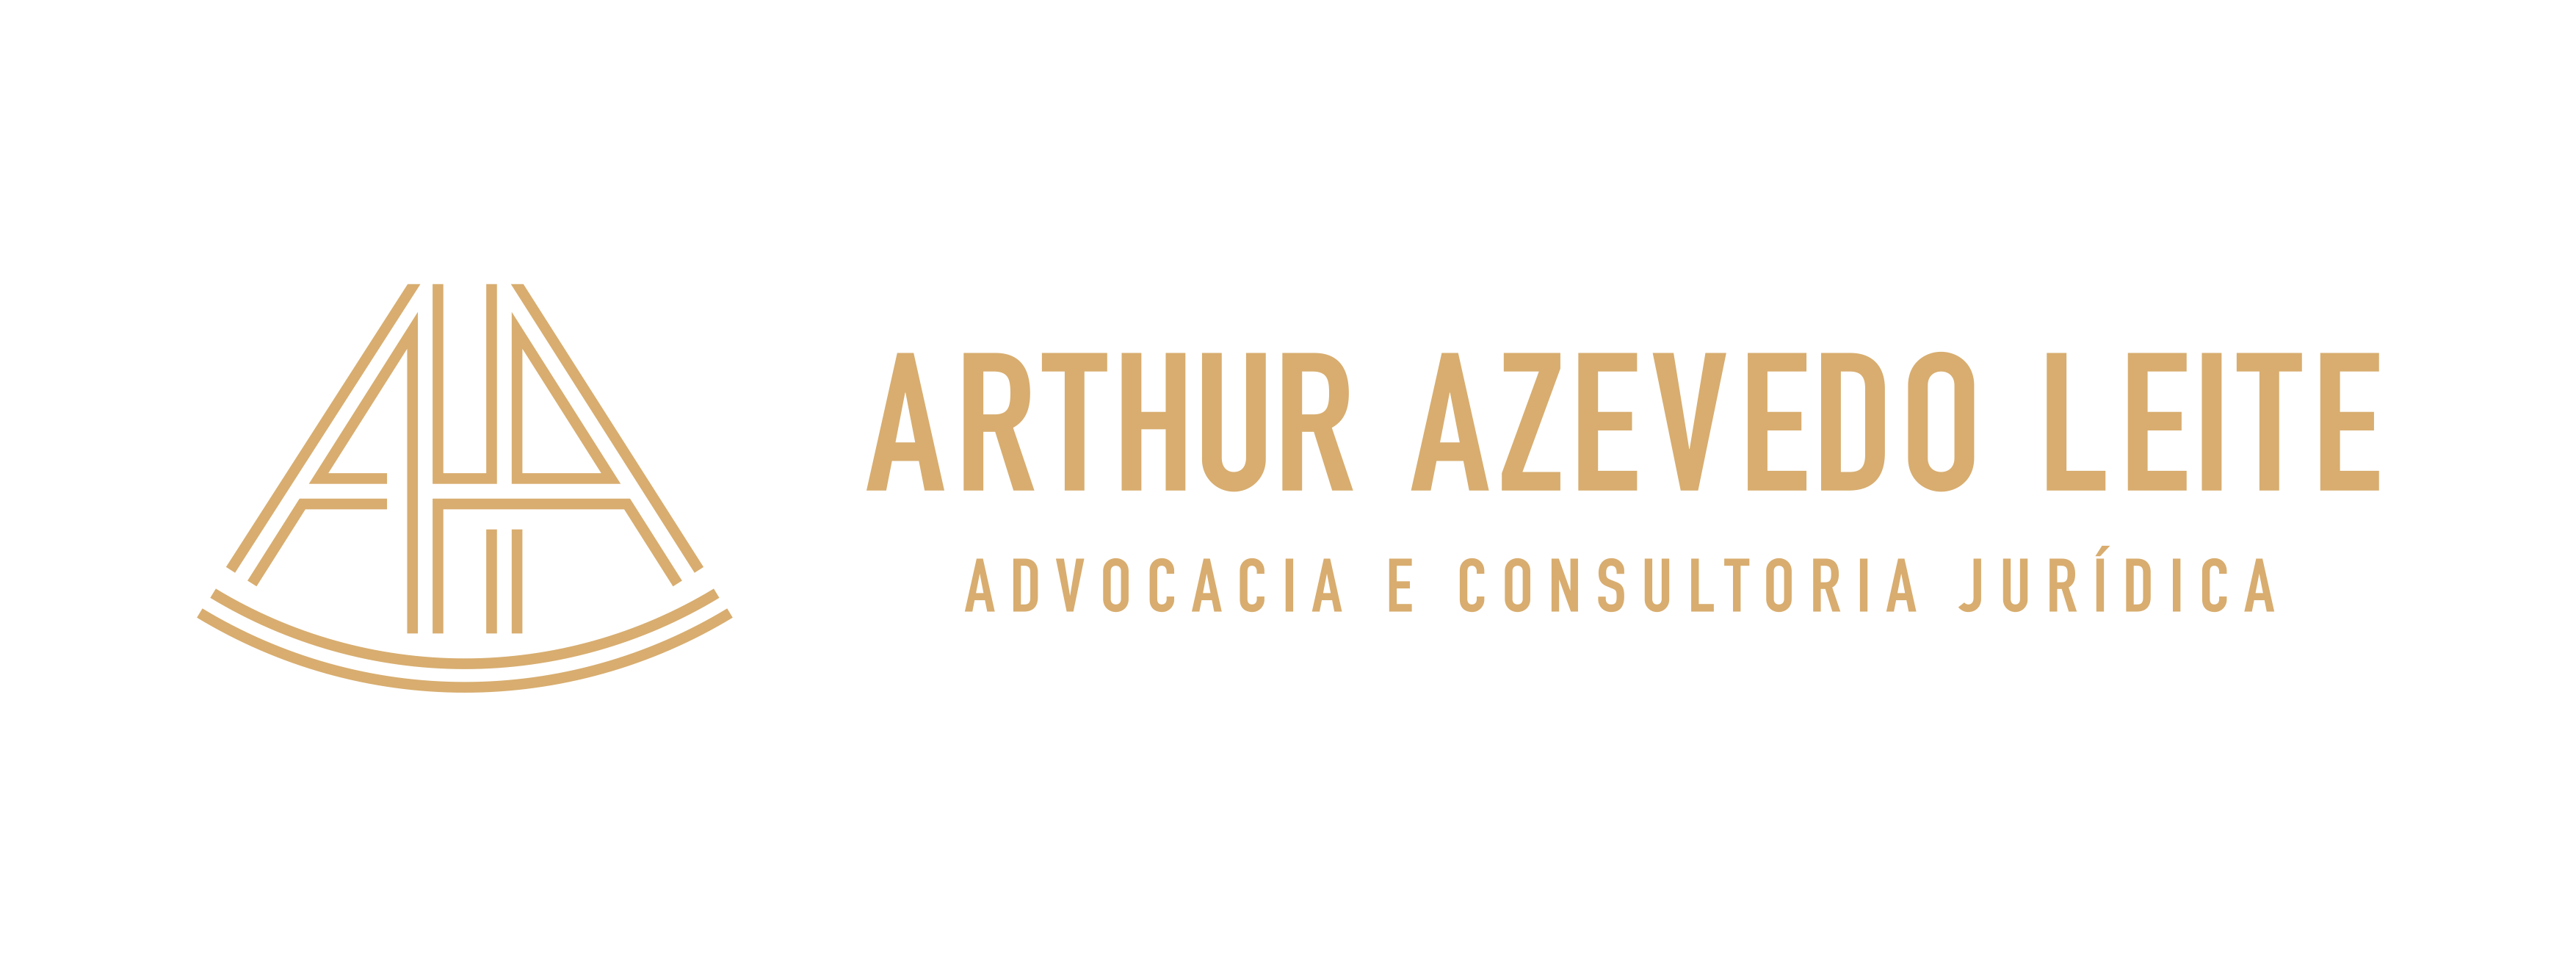 Arthur Azevedo Leite - Advocacia